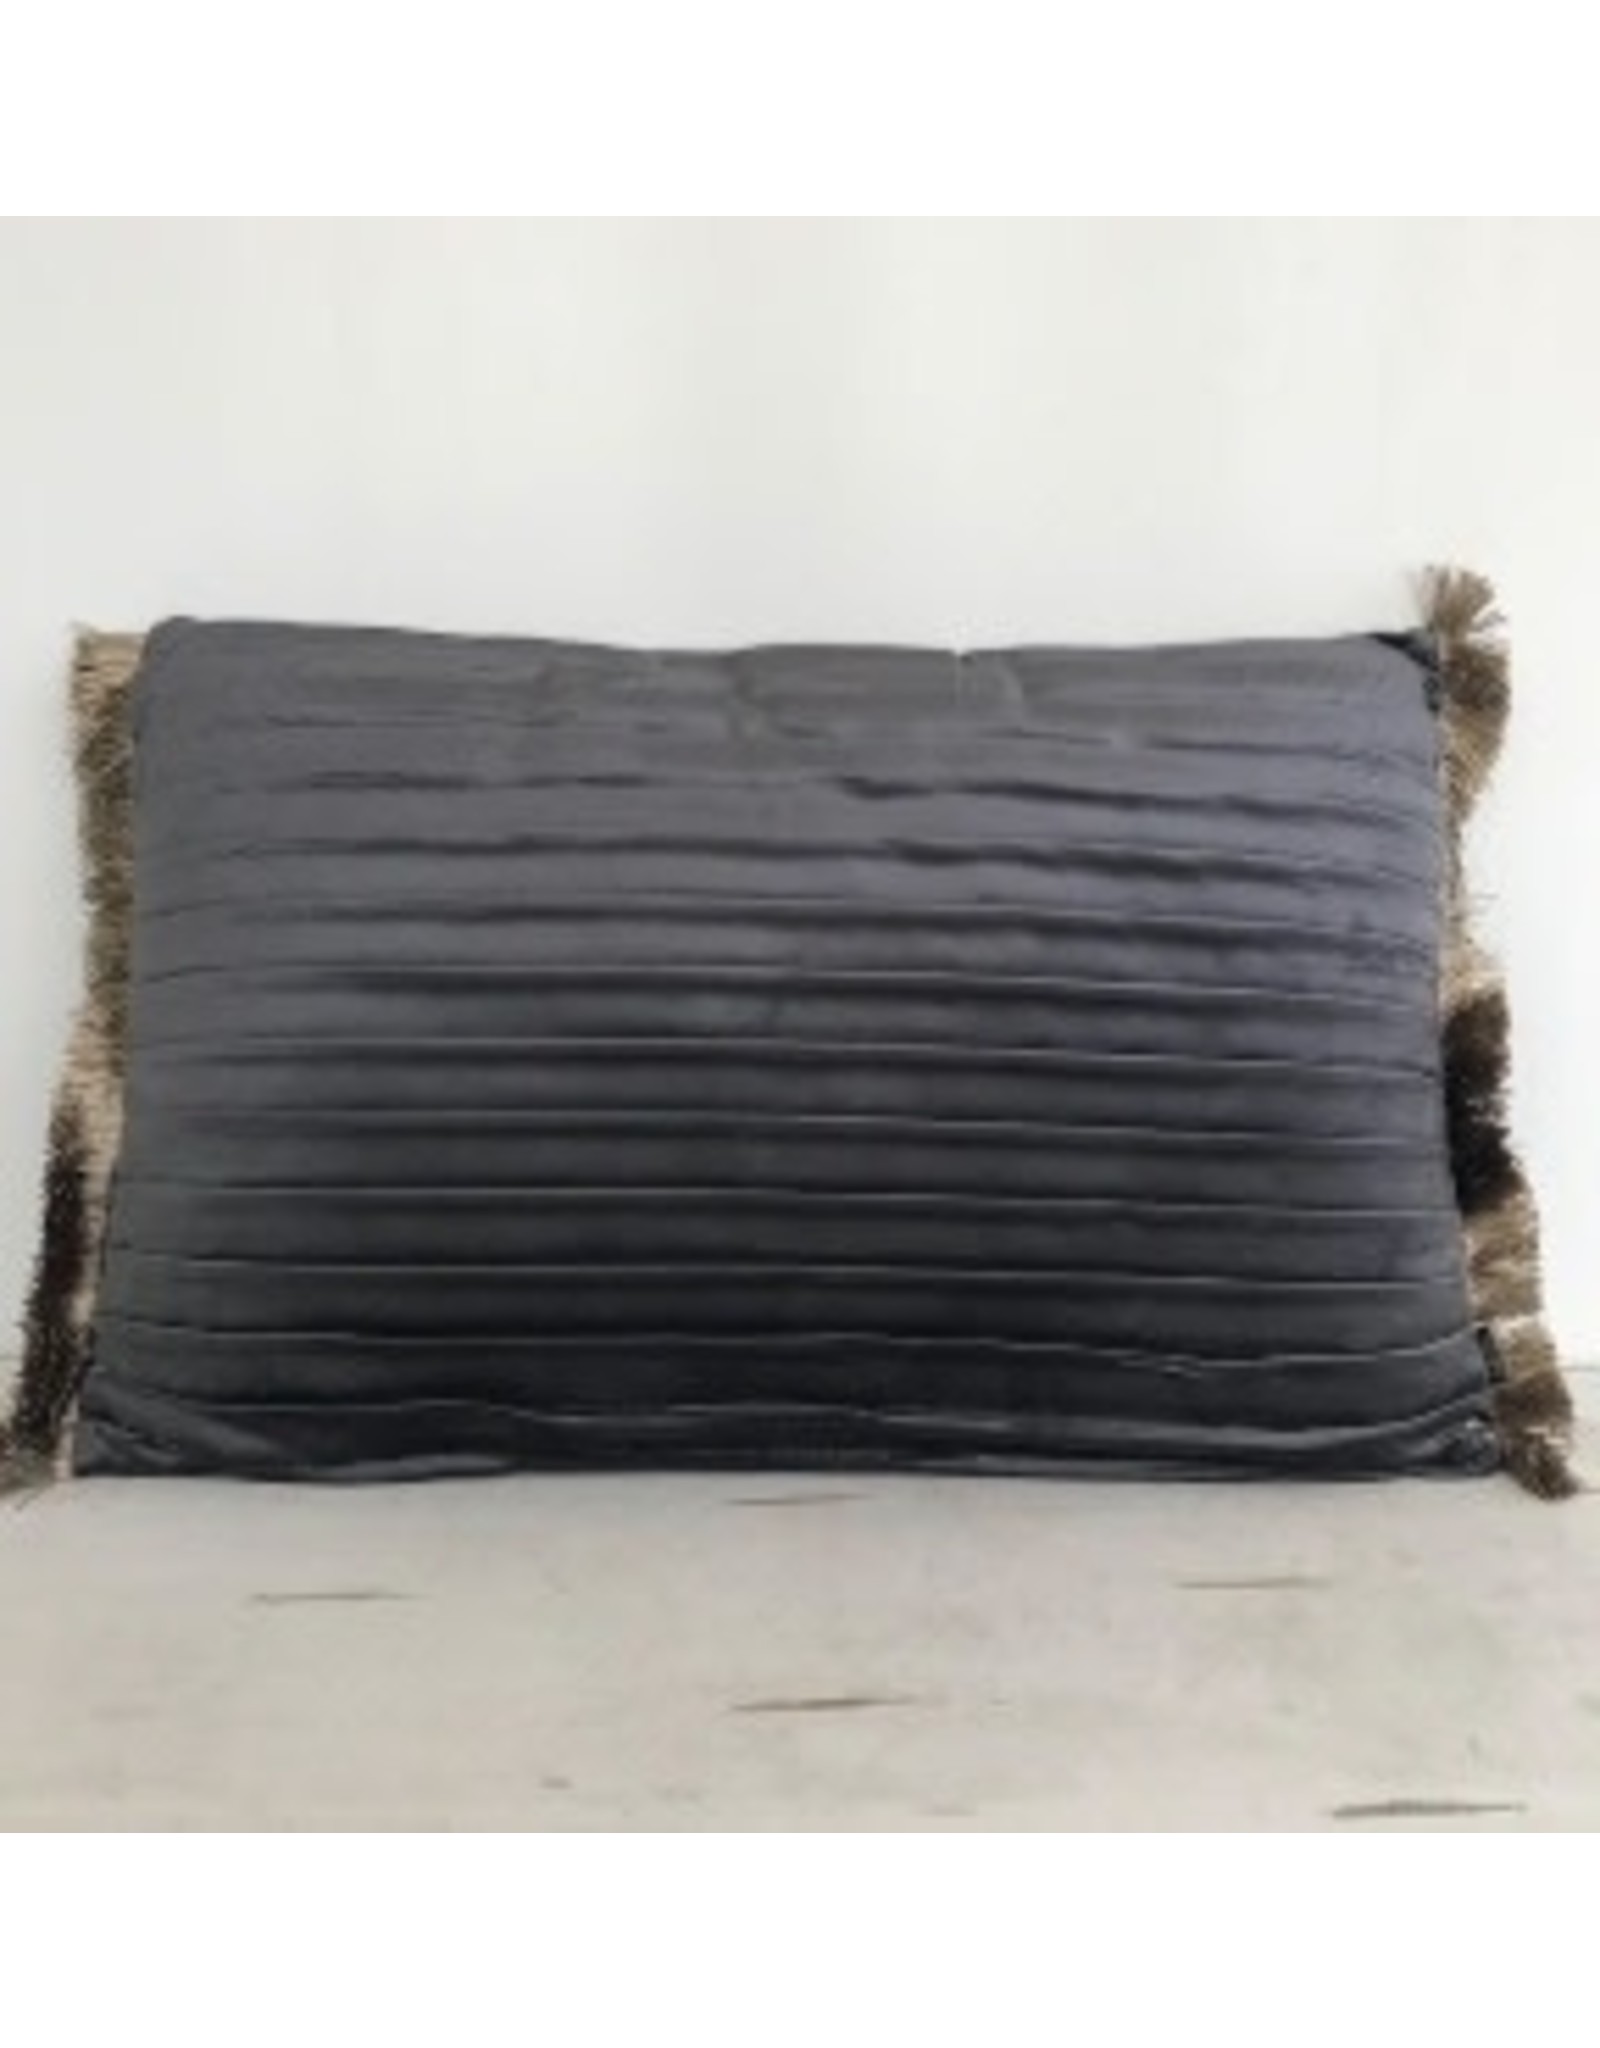 Velvet kussen taupe/ grijs 40x60 cm met plooien